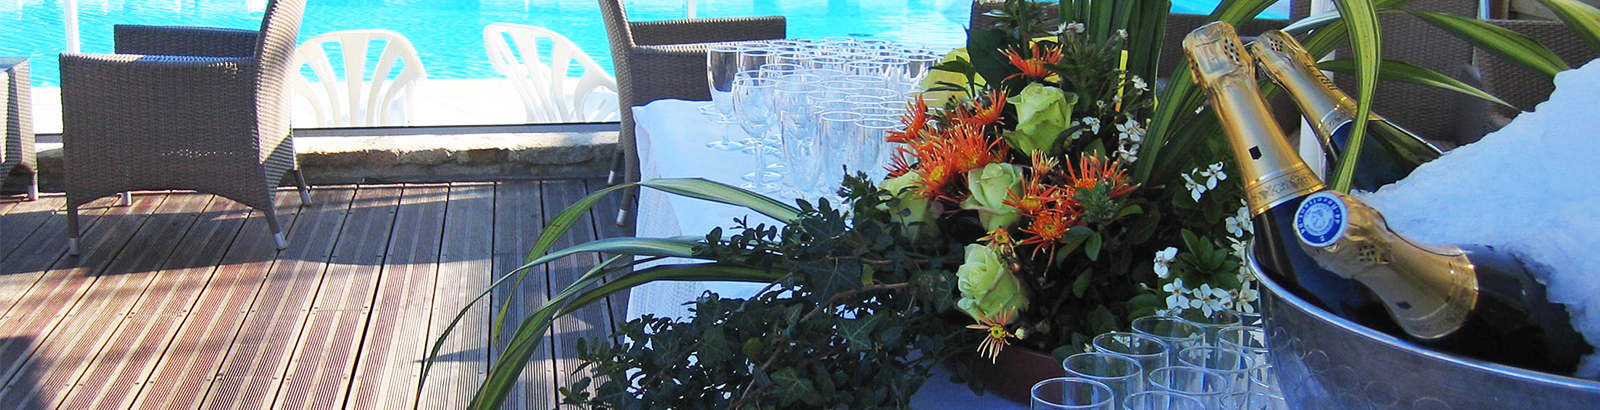 Terrasse mit Blick auf den Aquabereich für Cocktails